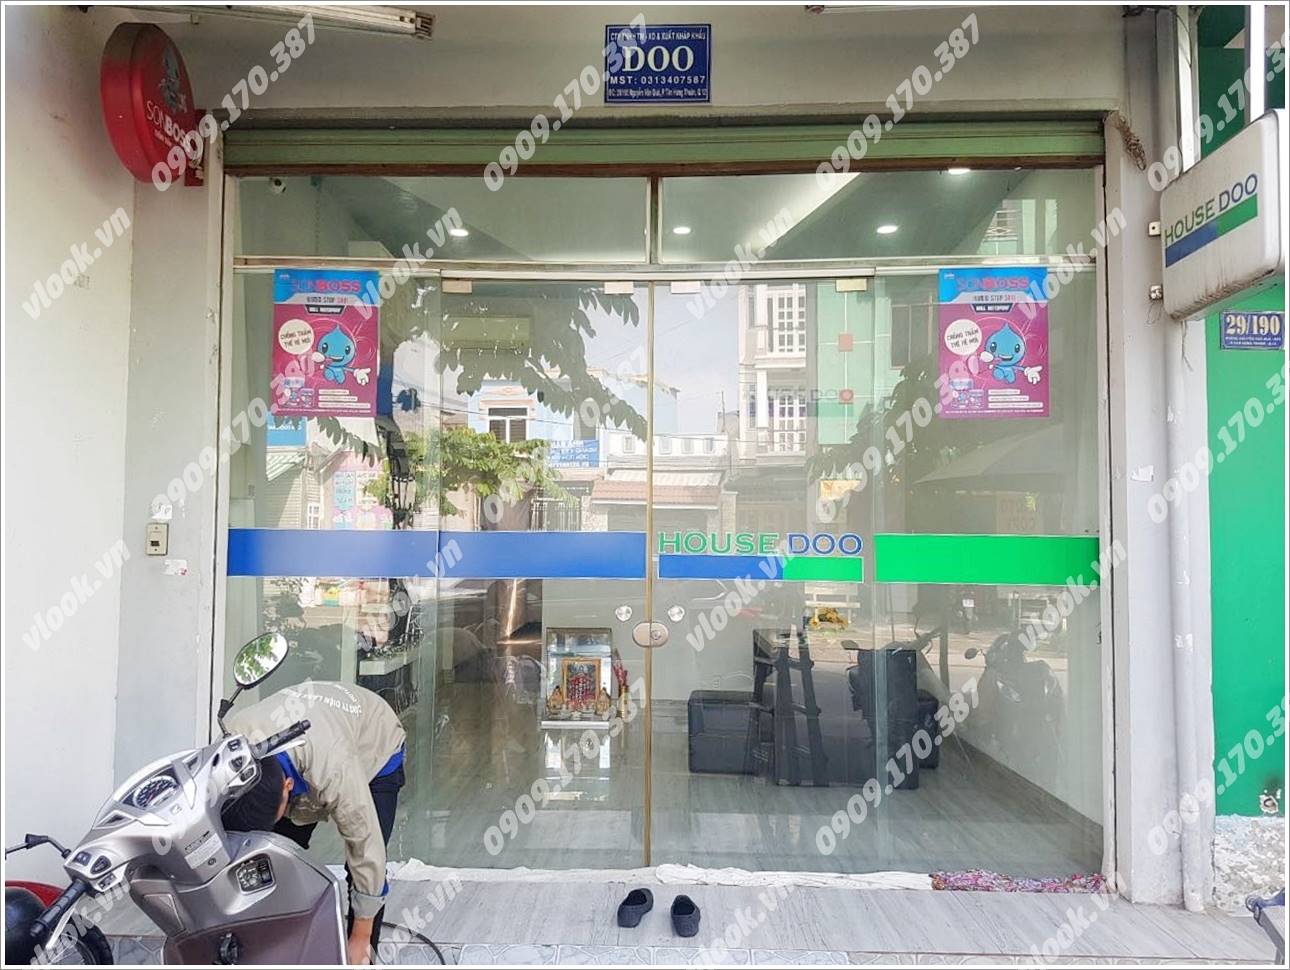 Cao ốc cho thuê văn phòng Doo Building Nguyễn Văn Quá, Quận 12 - vlook.vn